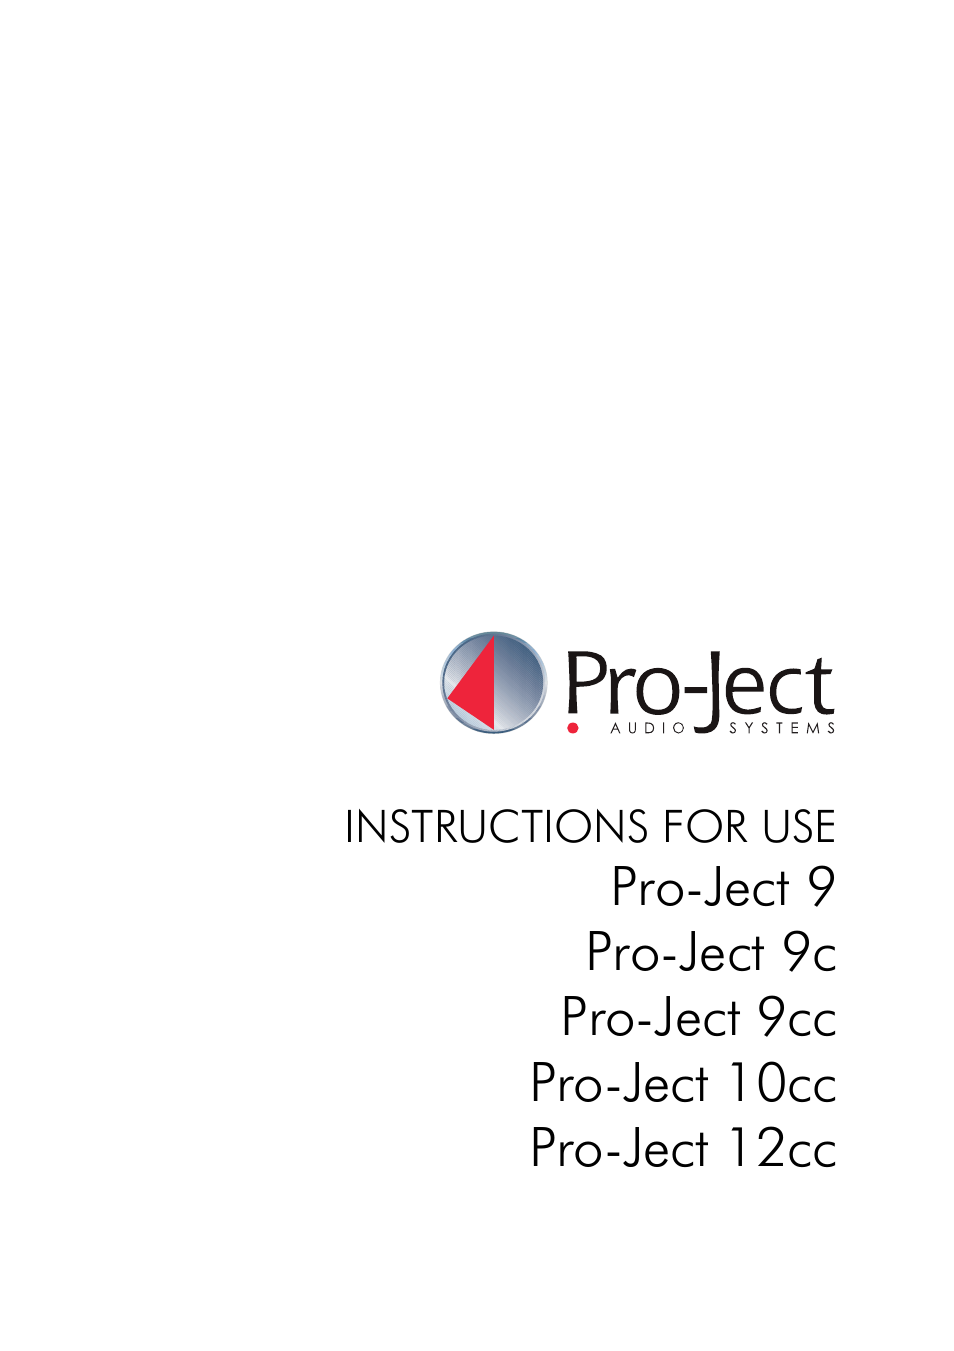 Pro-Ject 9cc